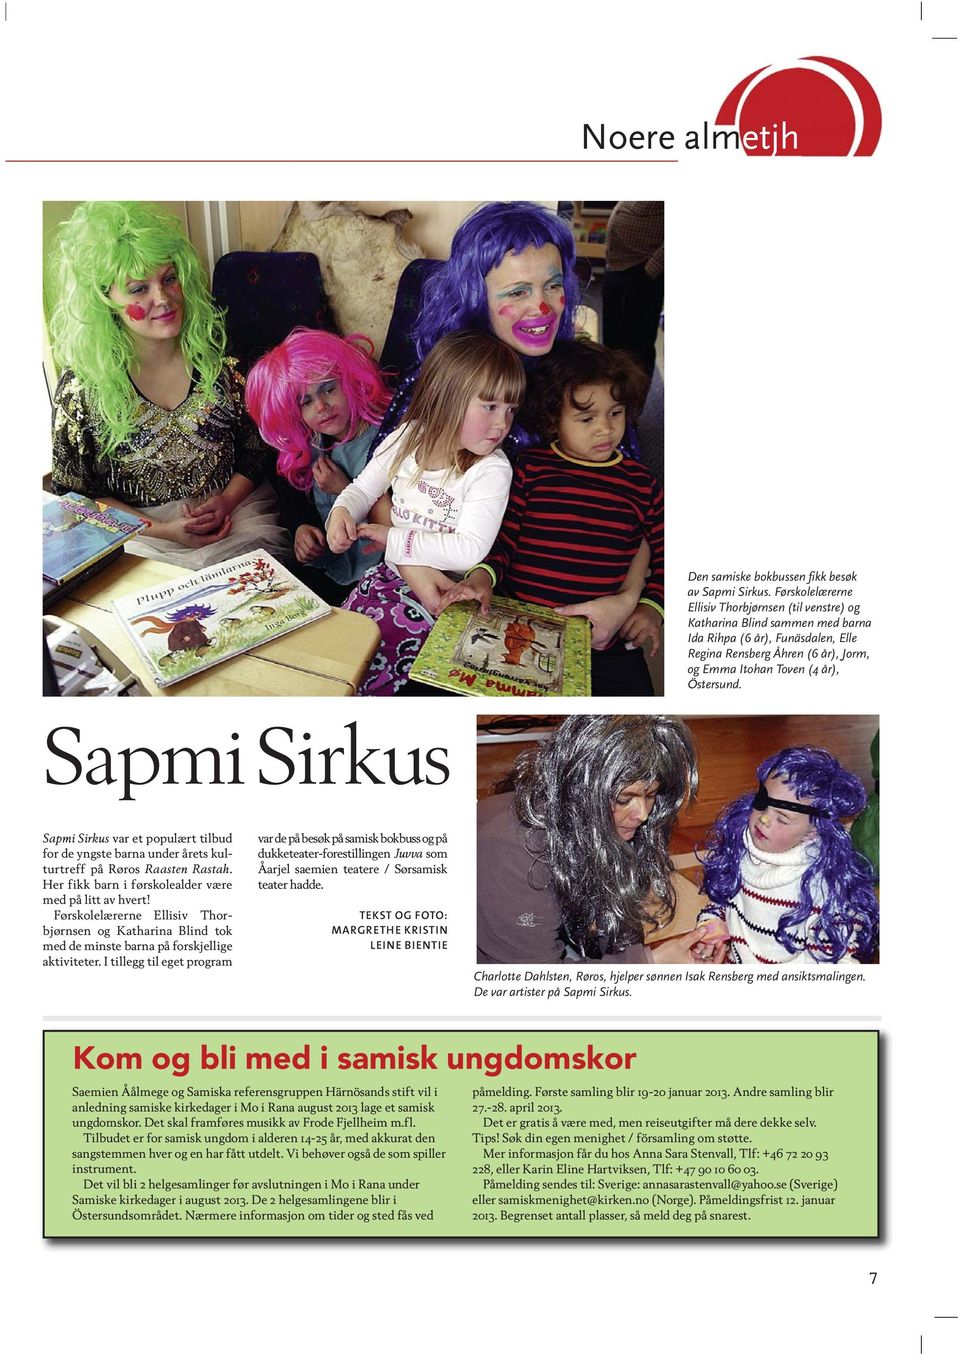 Sapmi Sirkus Sapmi Sirkus var et populært tilbud for de yngste barna under årets kulturtreff på Røros Raasten Rastah. Her fikk barn i førskolealder være med på litt av hvert!